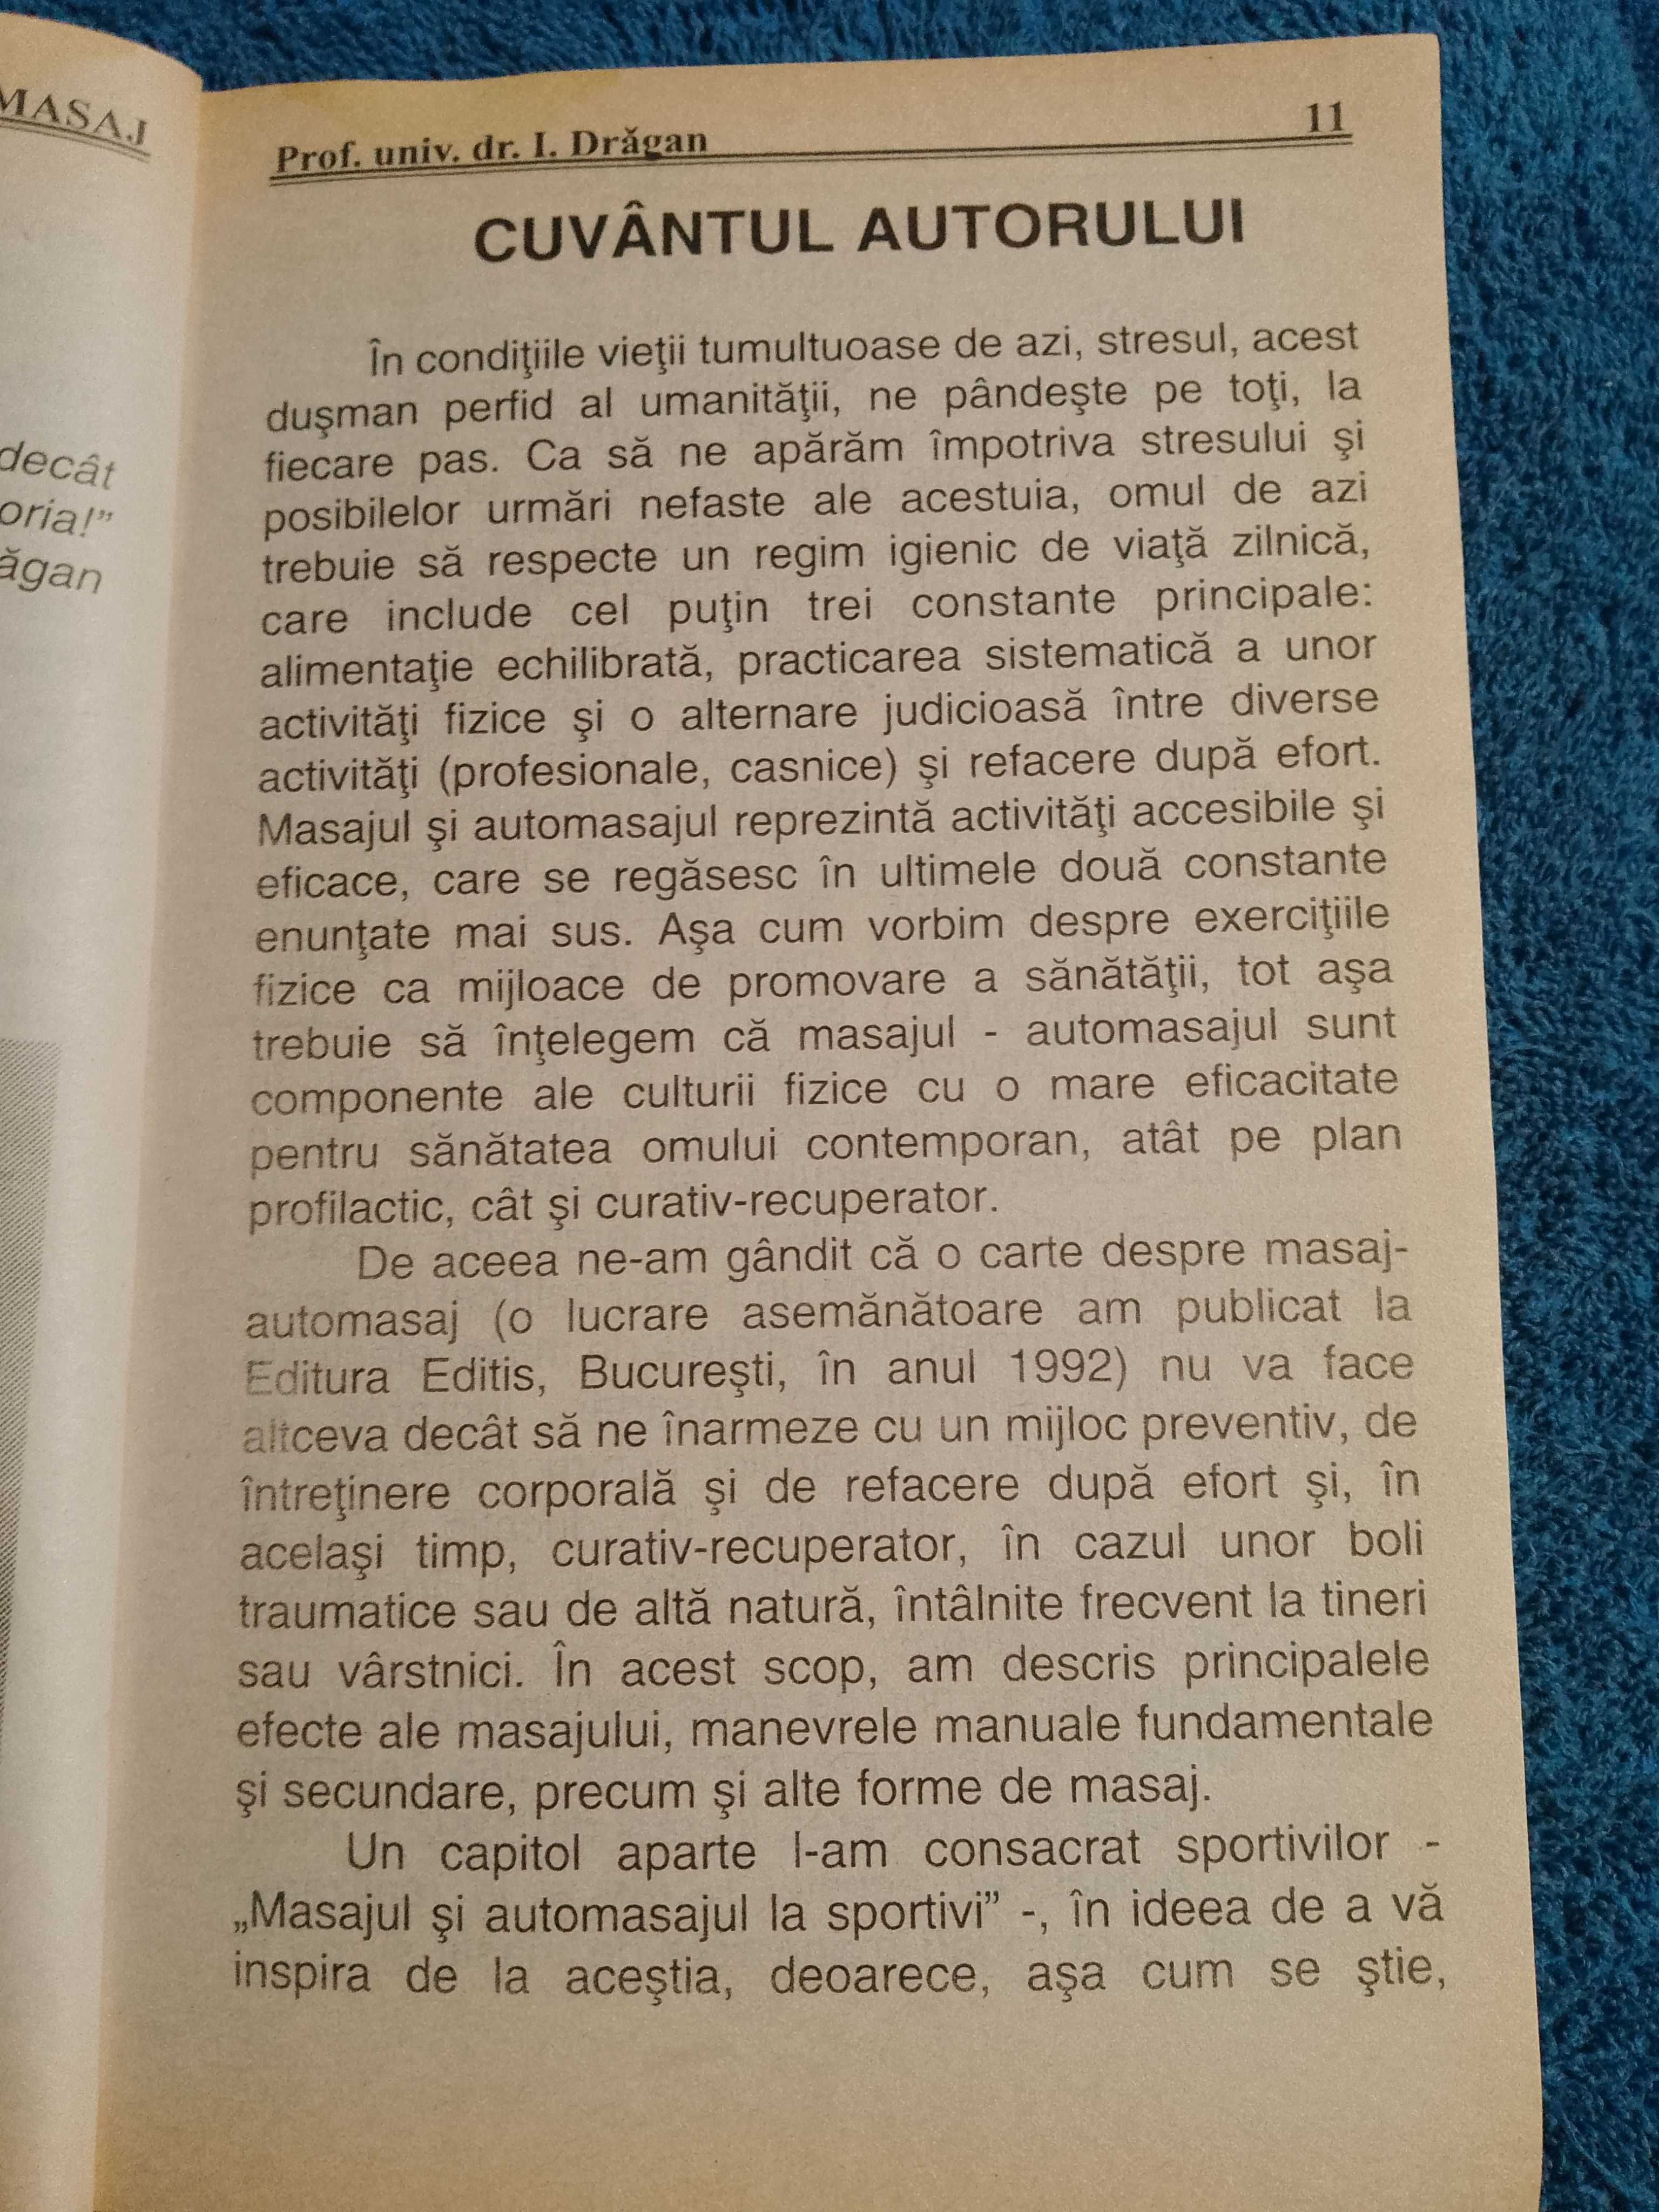 carte: Masaj - Automasaj - I. Drăgan